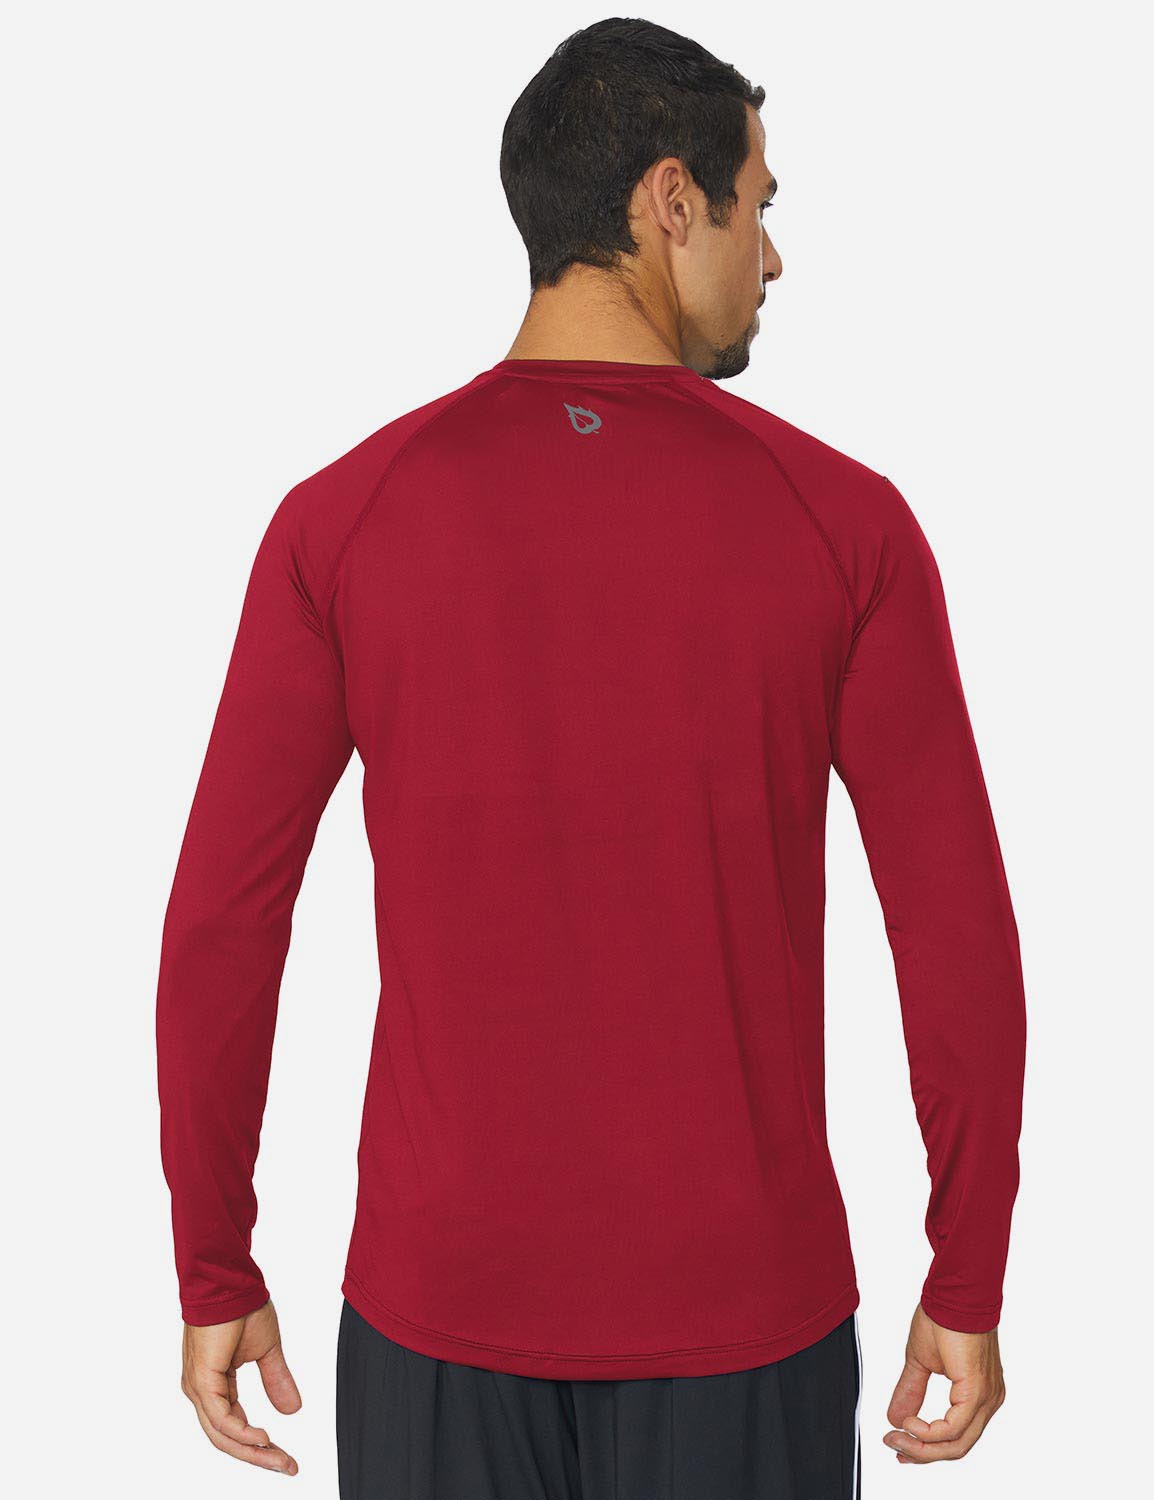 Baleaf Men's Workout Crew-Neck Slim-Cut Long Sleeved Shirt abd195 Dark Red Back